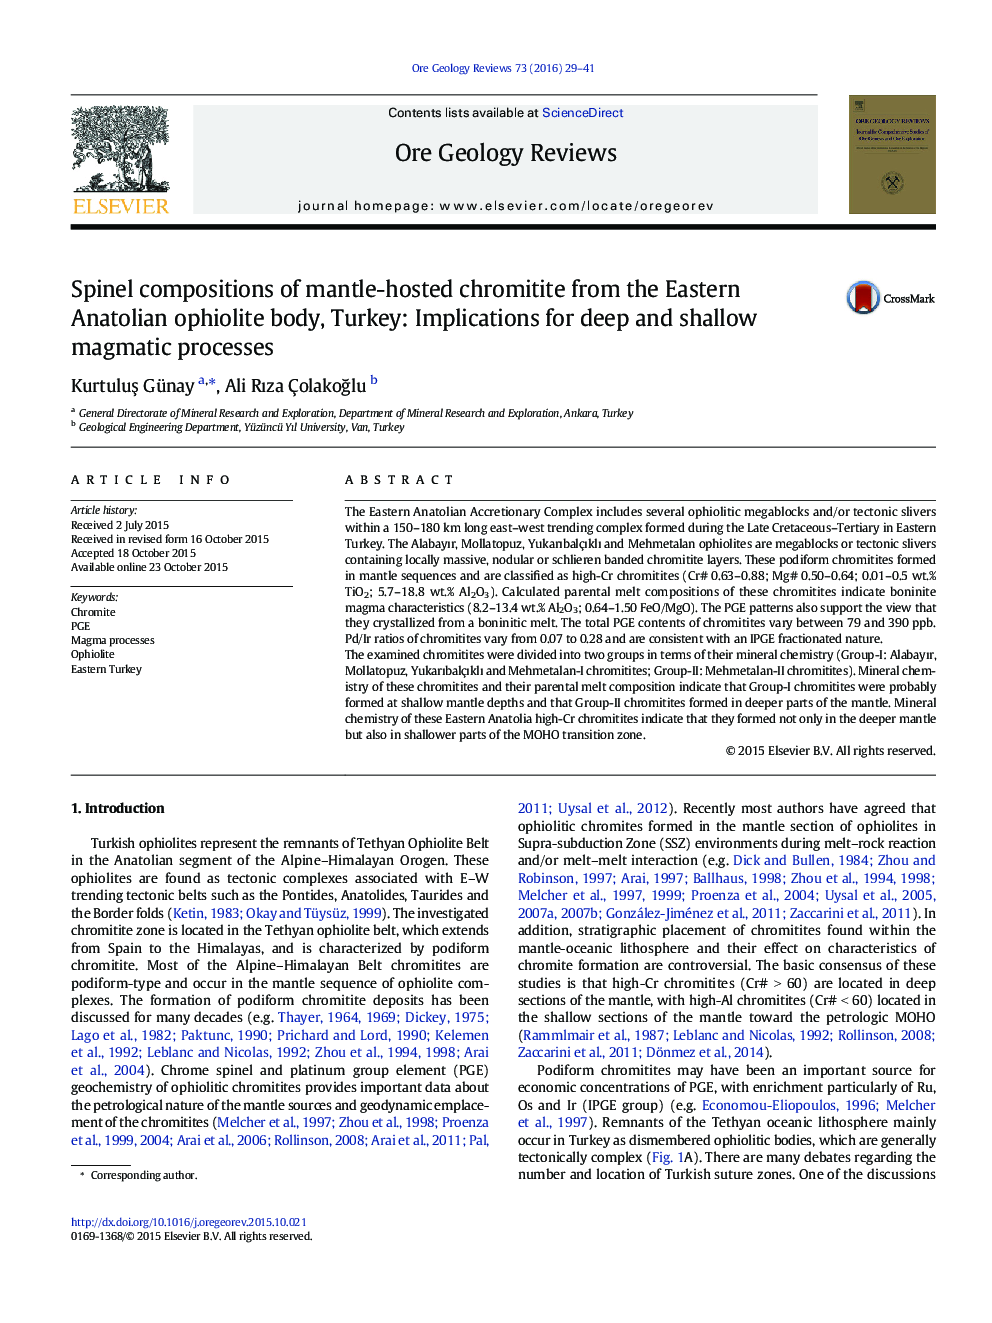 ترکیبات اسپینل از کرومیتیت میزبان انحصاری از بدن افیولیت آناتولی شرقی، ترکیه: پیامدهای فرآیندهای ماگمایی عمیق و کم عمق 